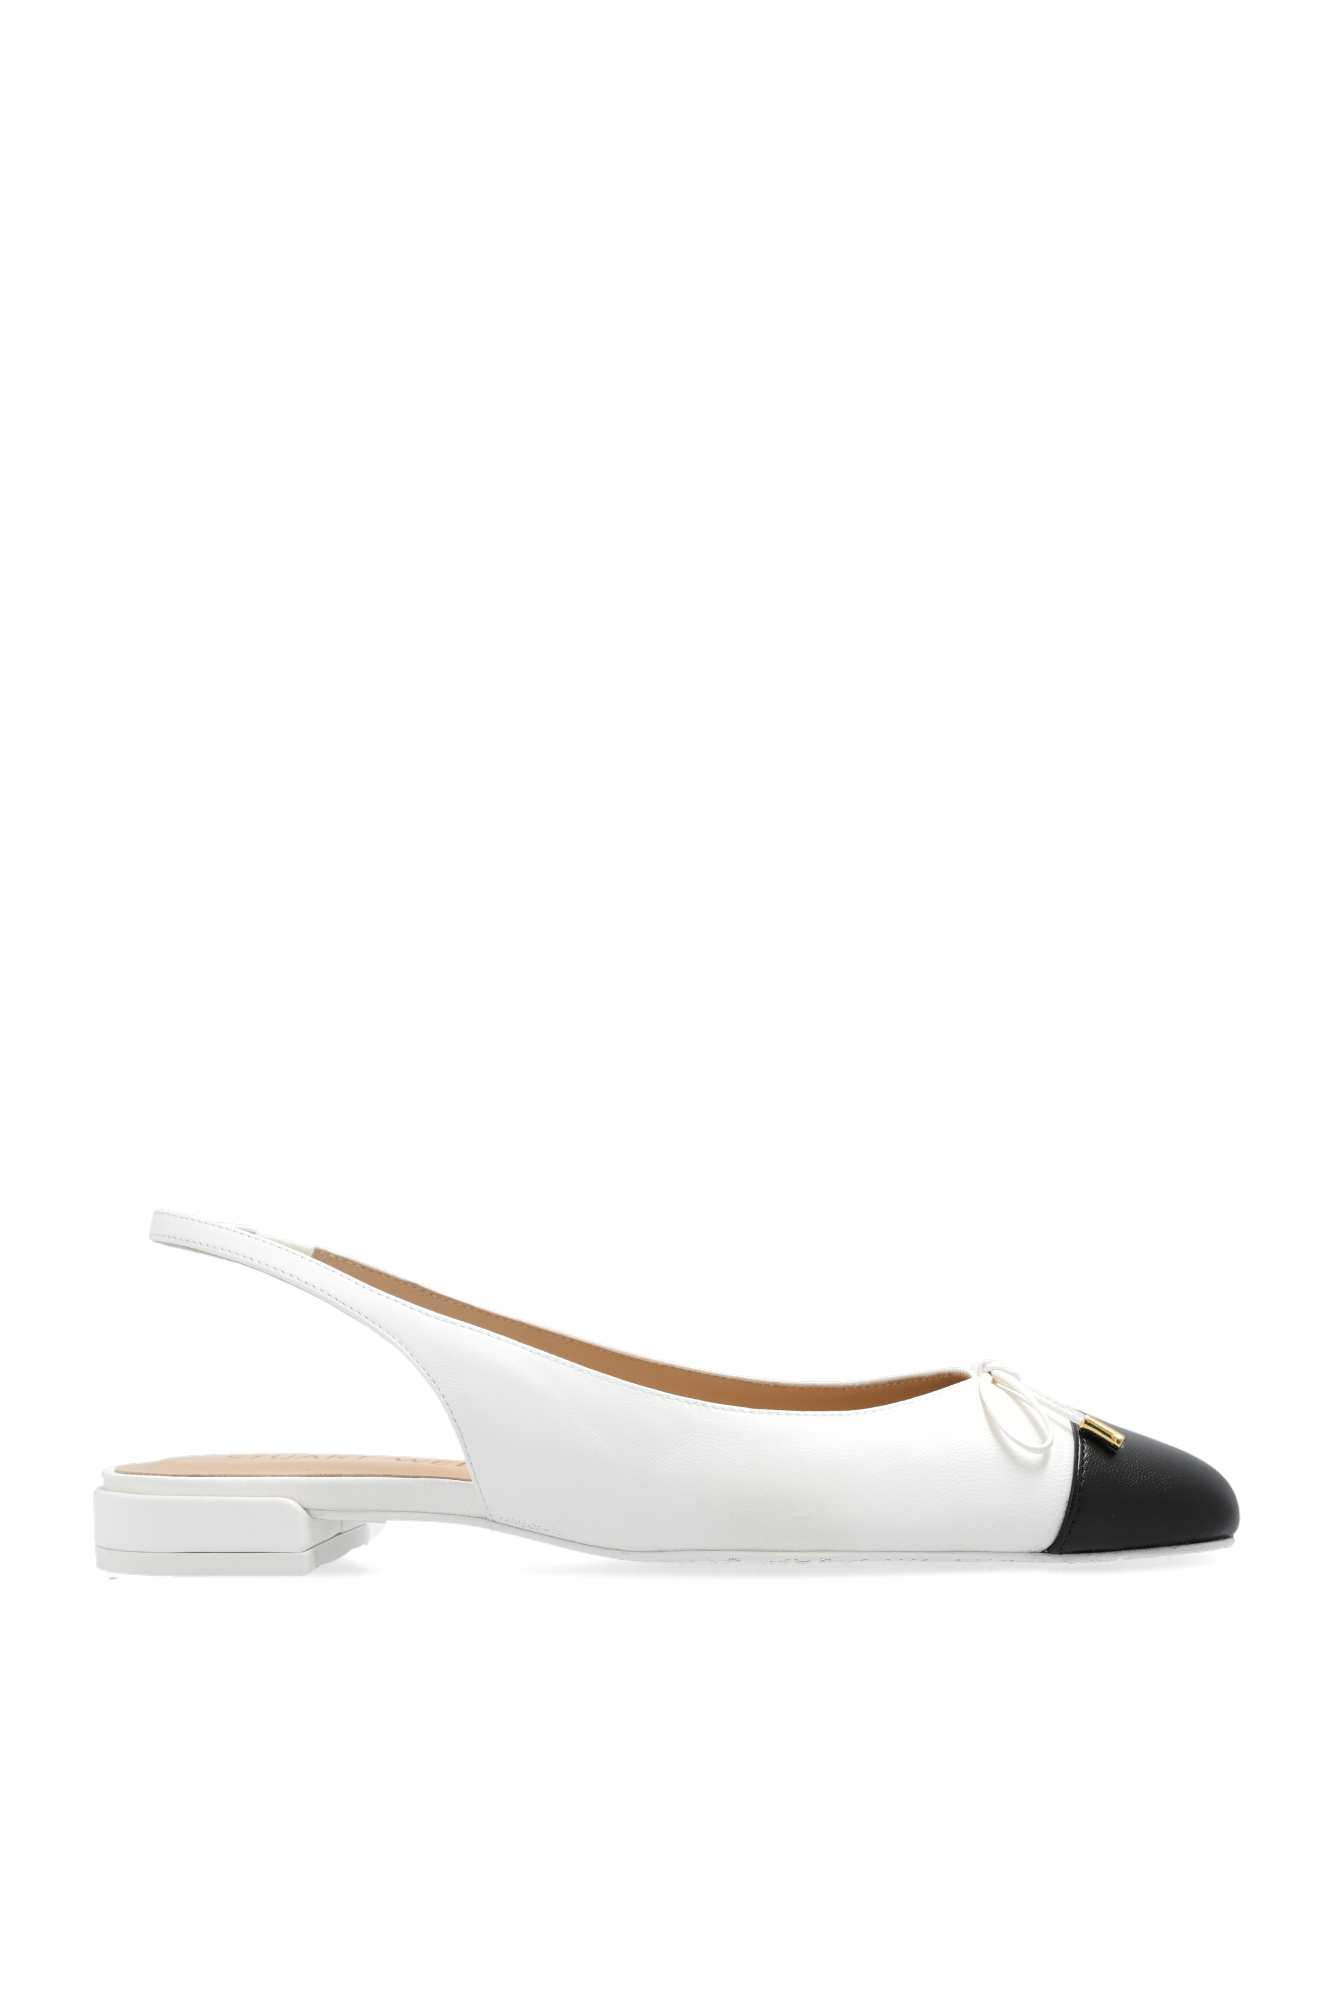 Stuart Weitzman ‘Sleek Bow’ slingback flat shoes